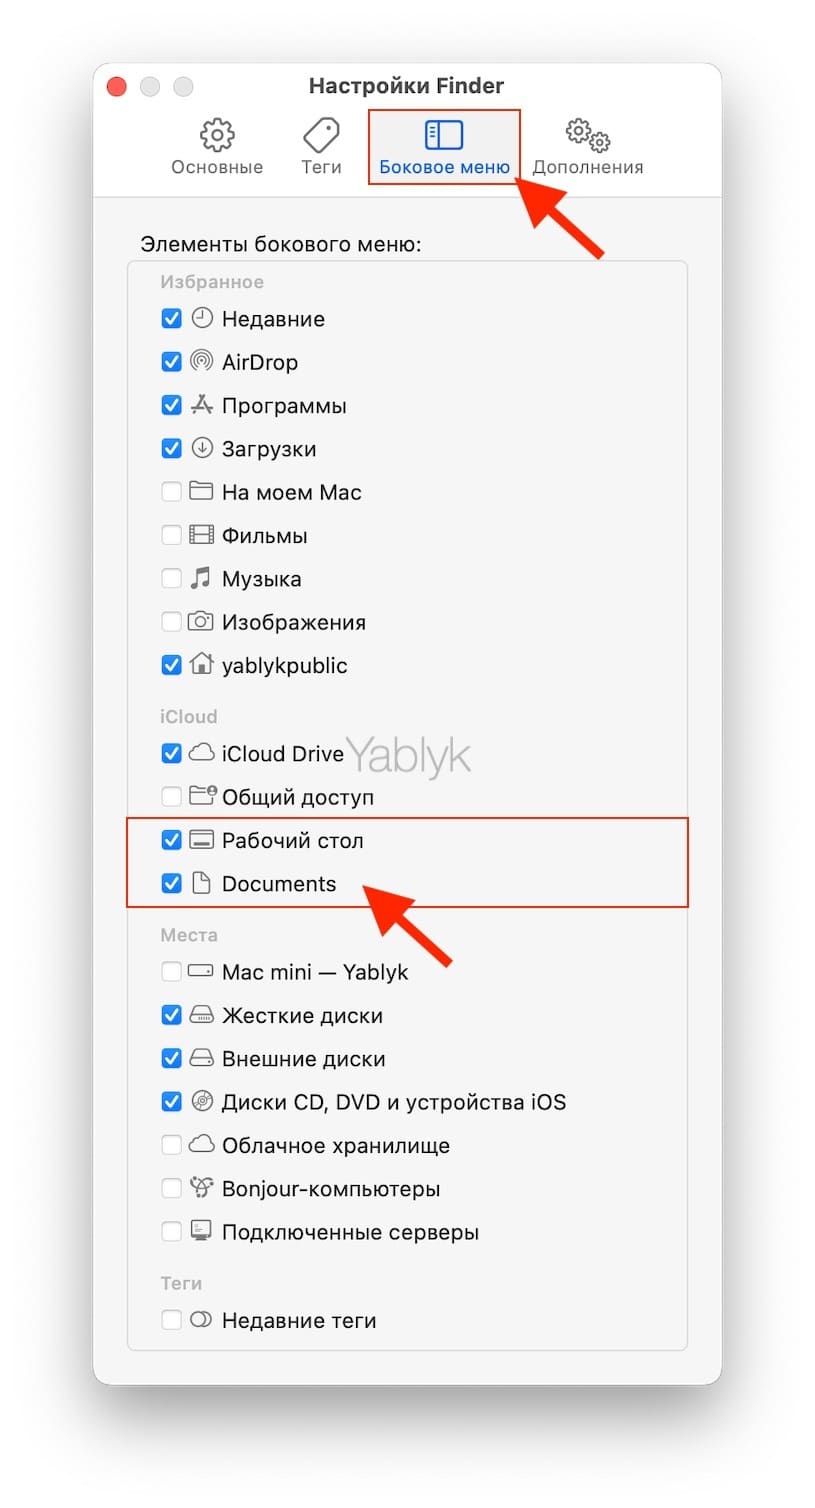 Как включить синхронизацию папок «Рабочий стол» и «Документы» с iCloud Drive